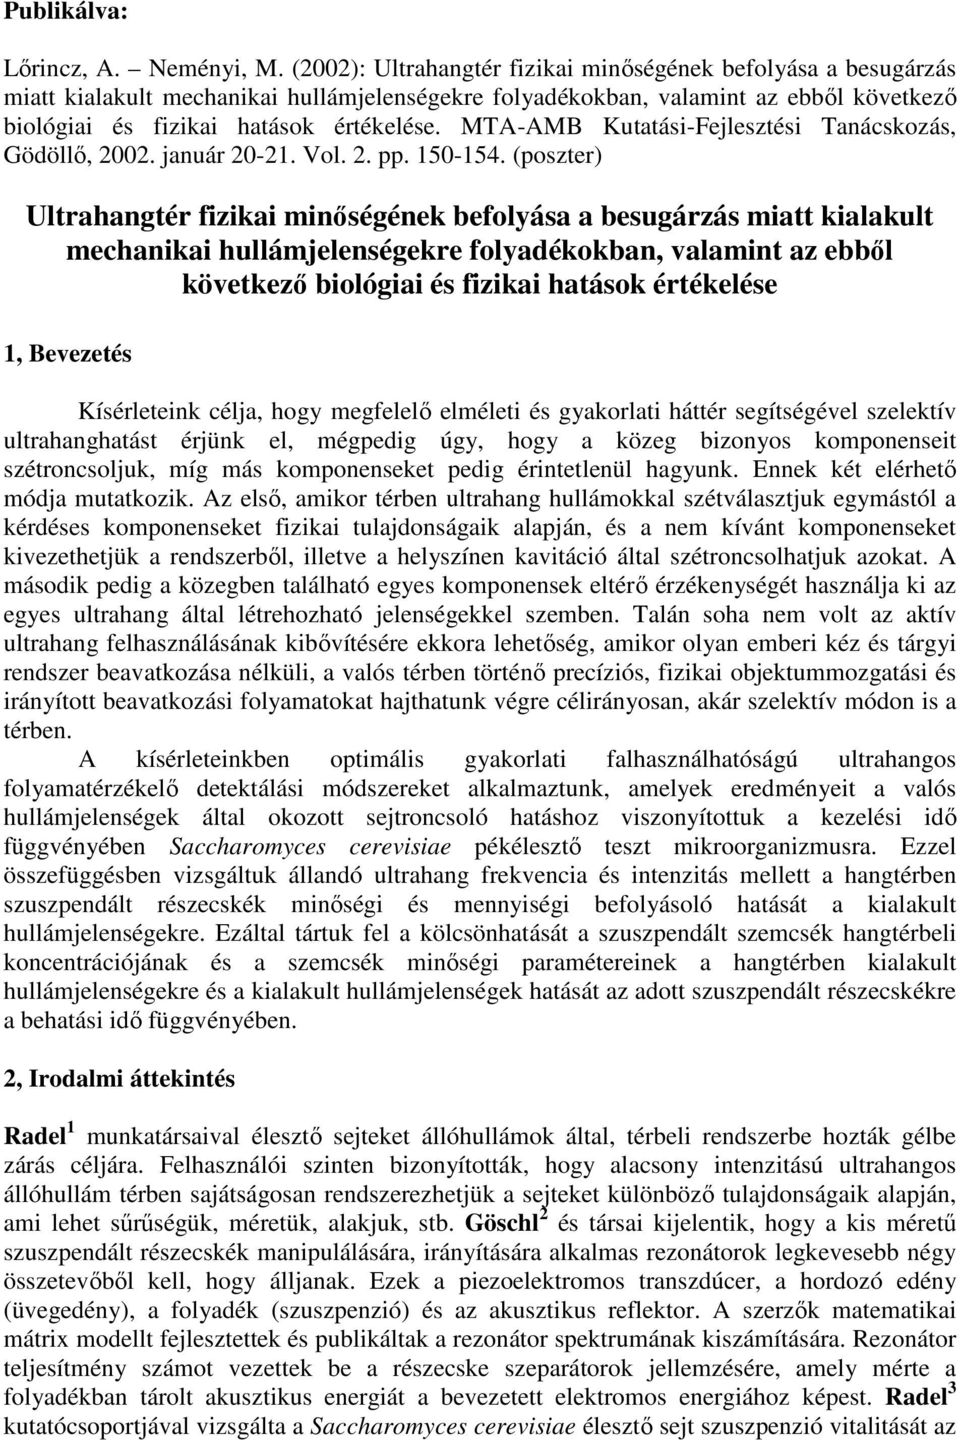 MTA-AMB Kutatási-Fejlesztési Tanácskozás, Gödöllı, 2002. január 20-21. Vol. 2. pp. 150-154.